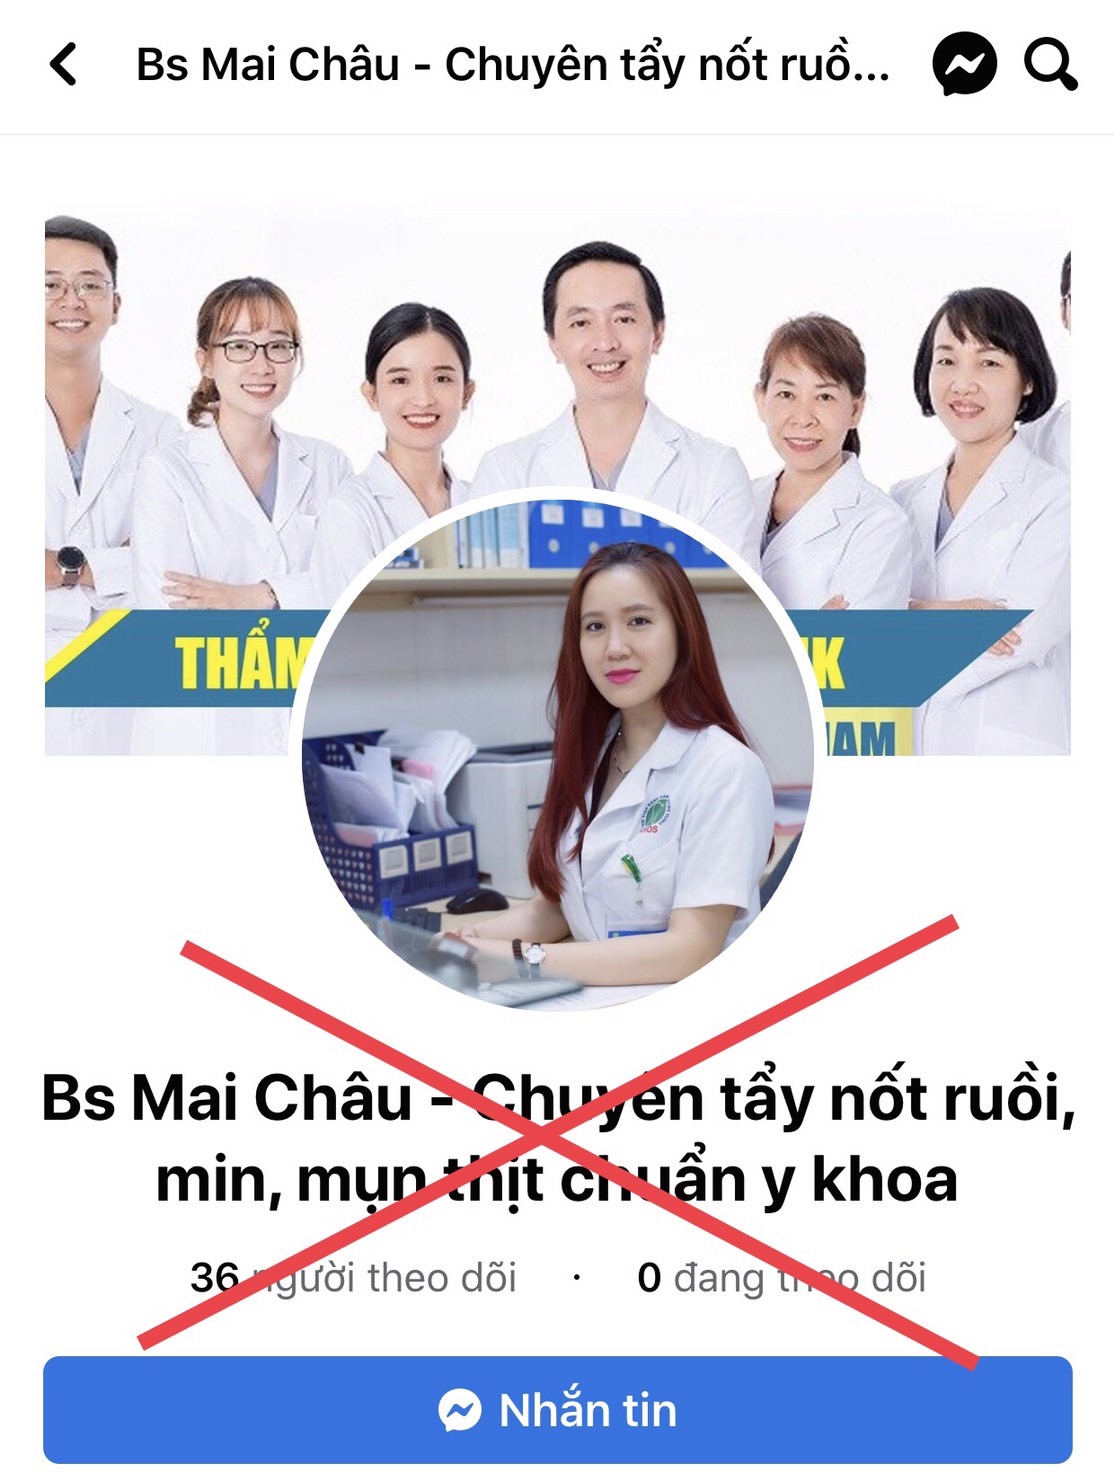 Hình ảnh của bác sĩ Nhung được mang ra làm hình đại diện dưới tên bác sĩ Mai Châu. Ảnh: Hương Giang